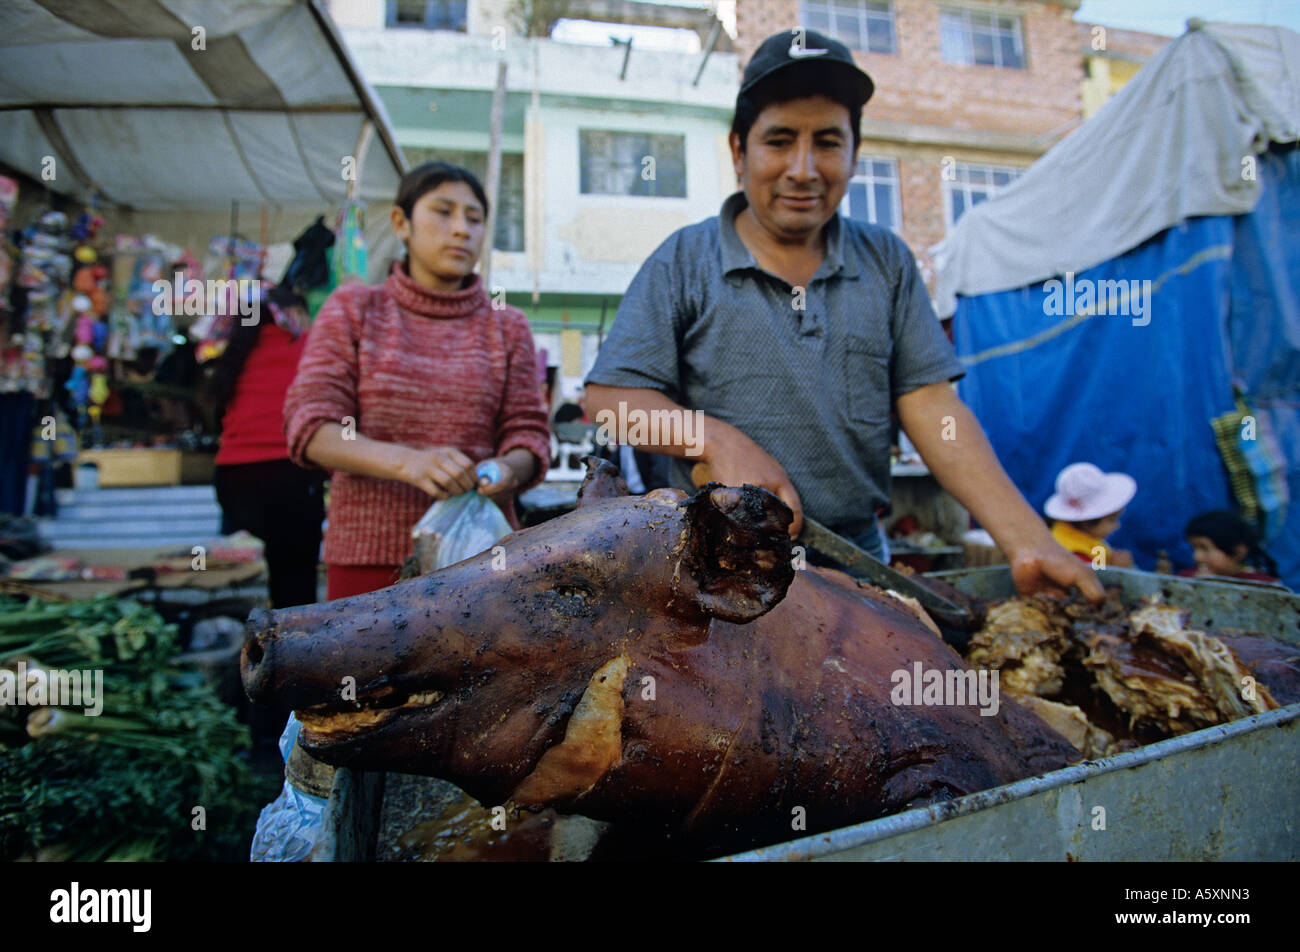 A grilled pig (Sus scrofa domesticus) on the market of Huaraz (Peru). Cochon grillé sur le marché de Huaraz (Pérou). Stock Photo